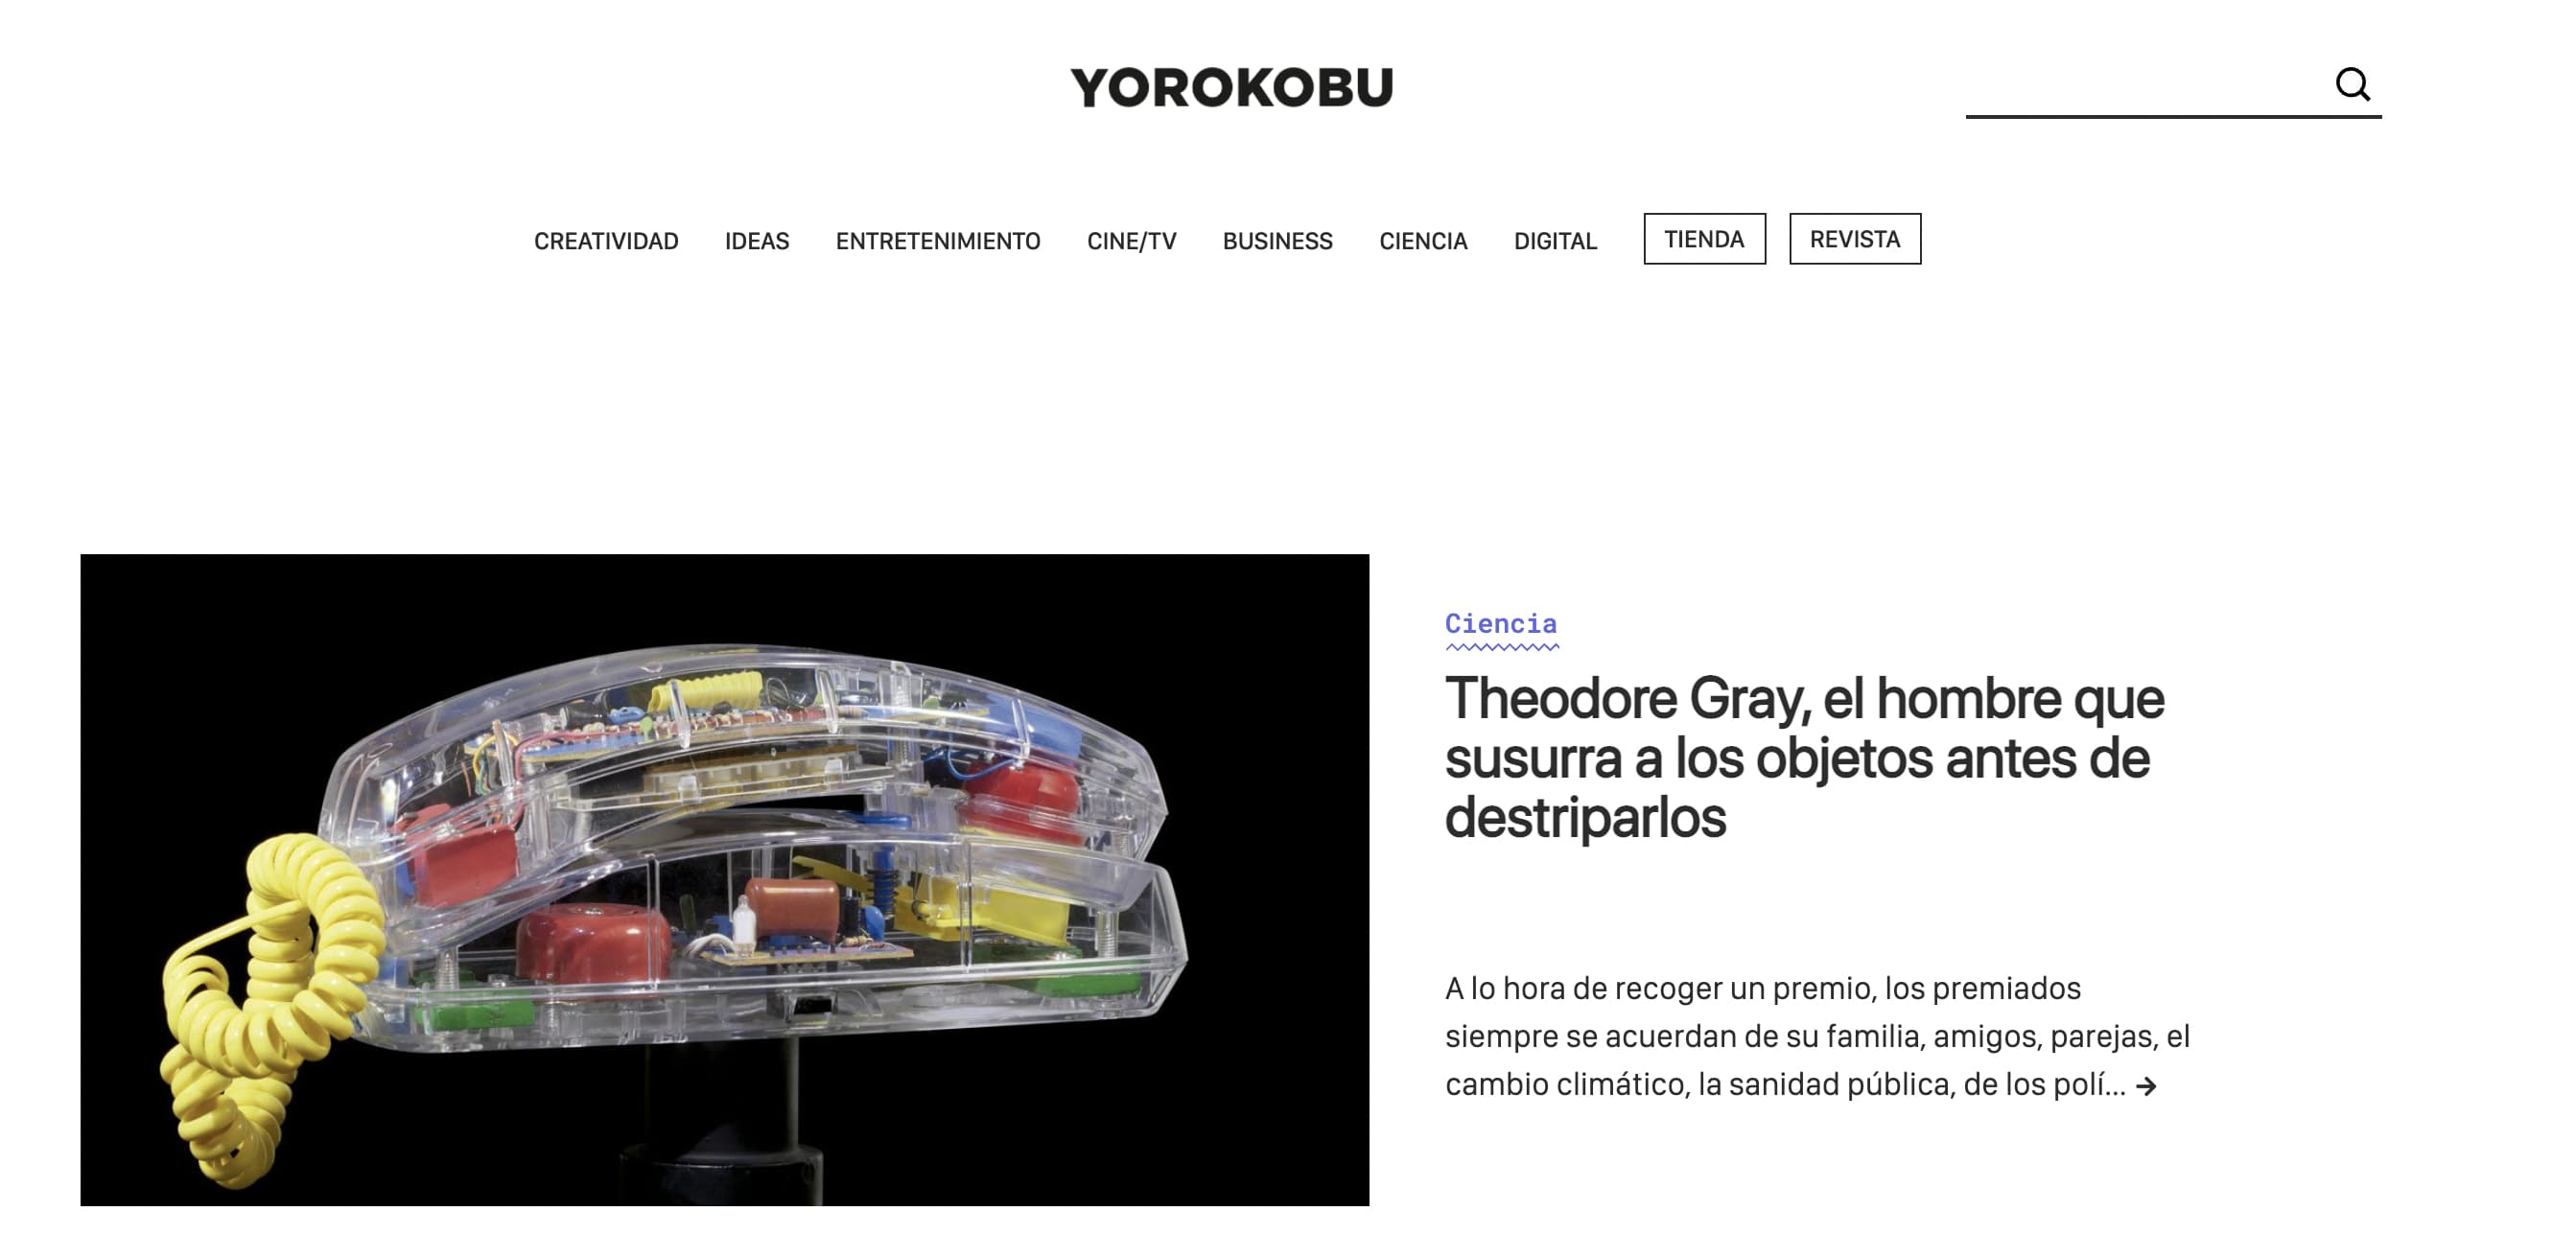 Ejemplo de blog realmente interesante: Yorokobu